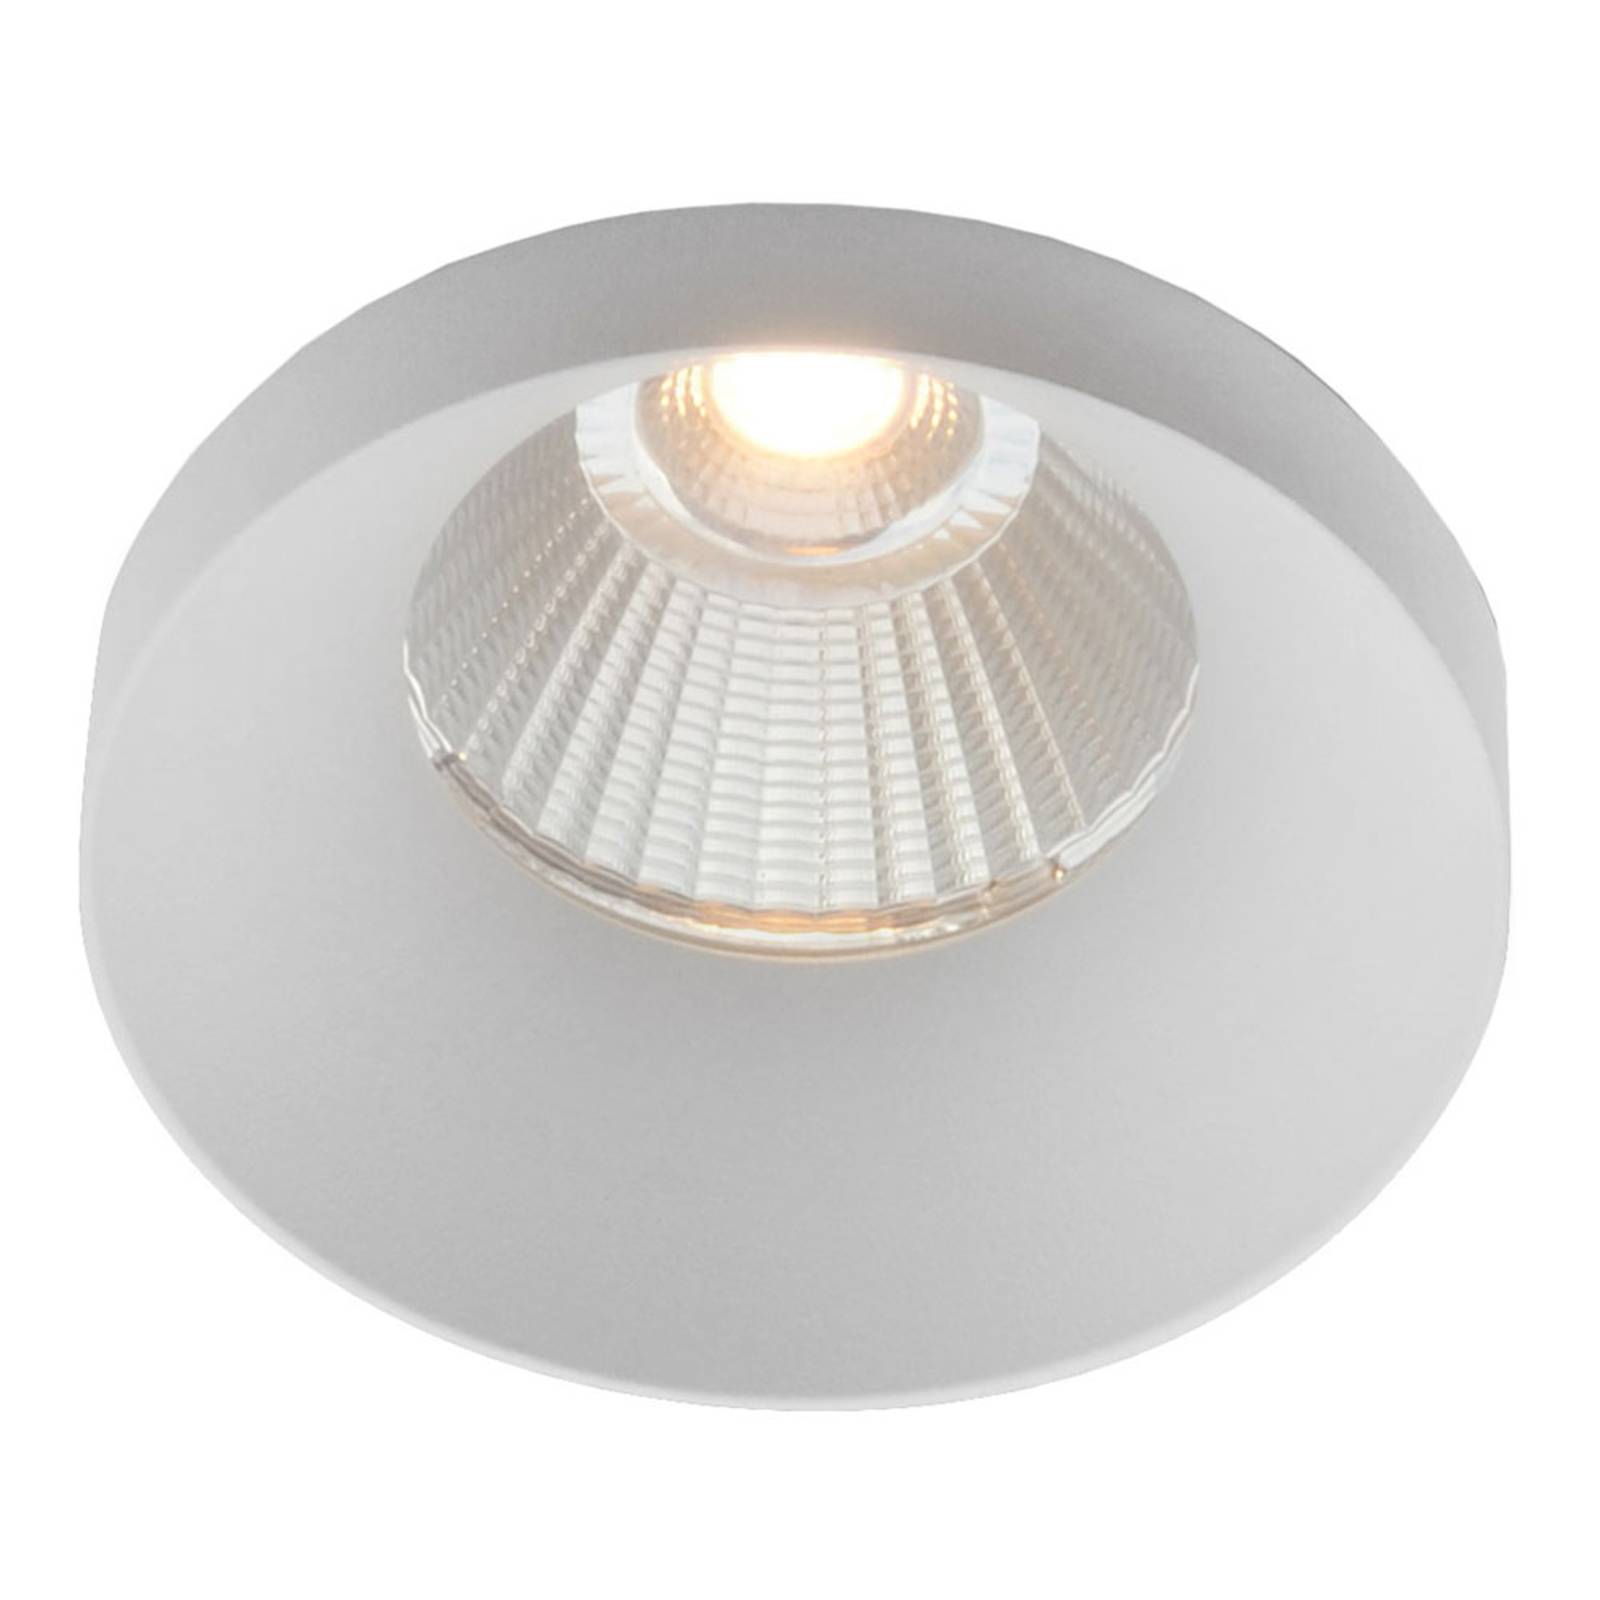 The Light Group GF design Owi Einbaulampe IP54 weiß 2.700 K